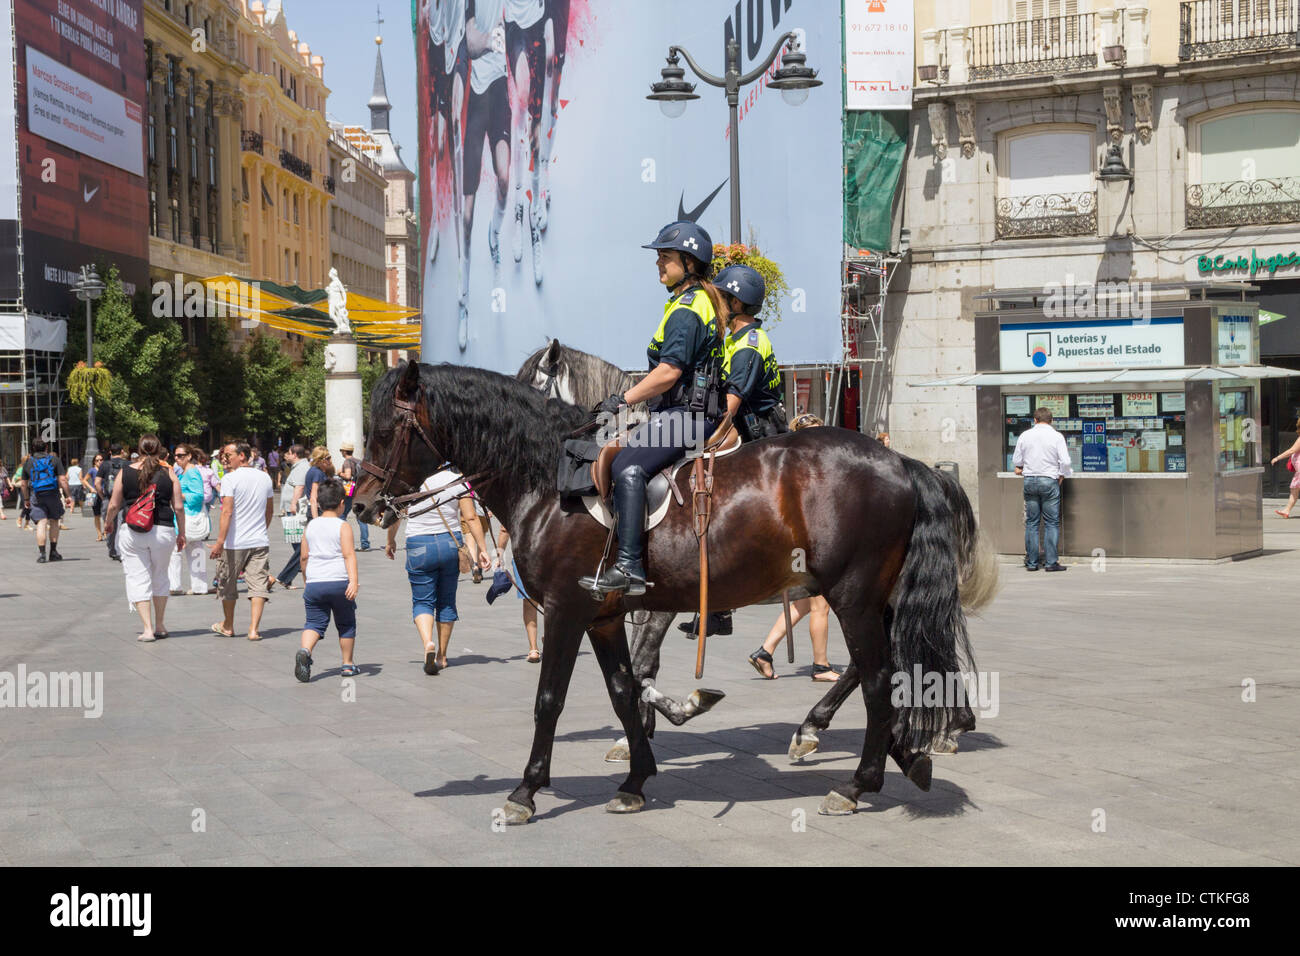 Policewoman à cheval dans la région de Puerta del Sol, Madrid, Espagne Banque D'Images